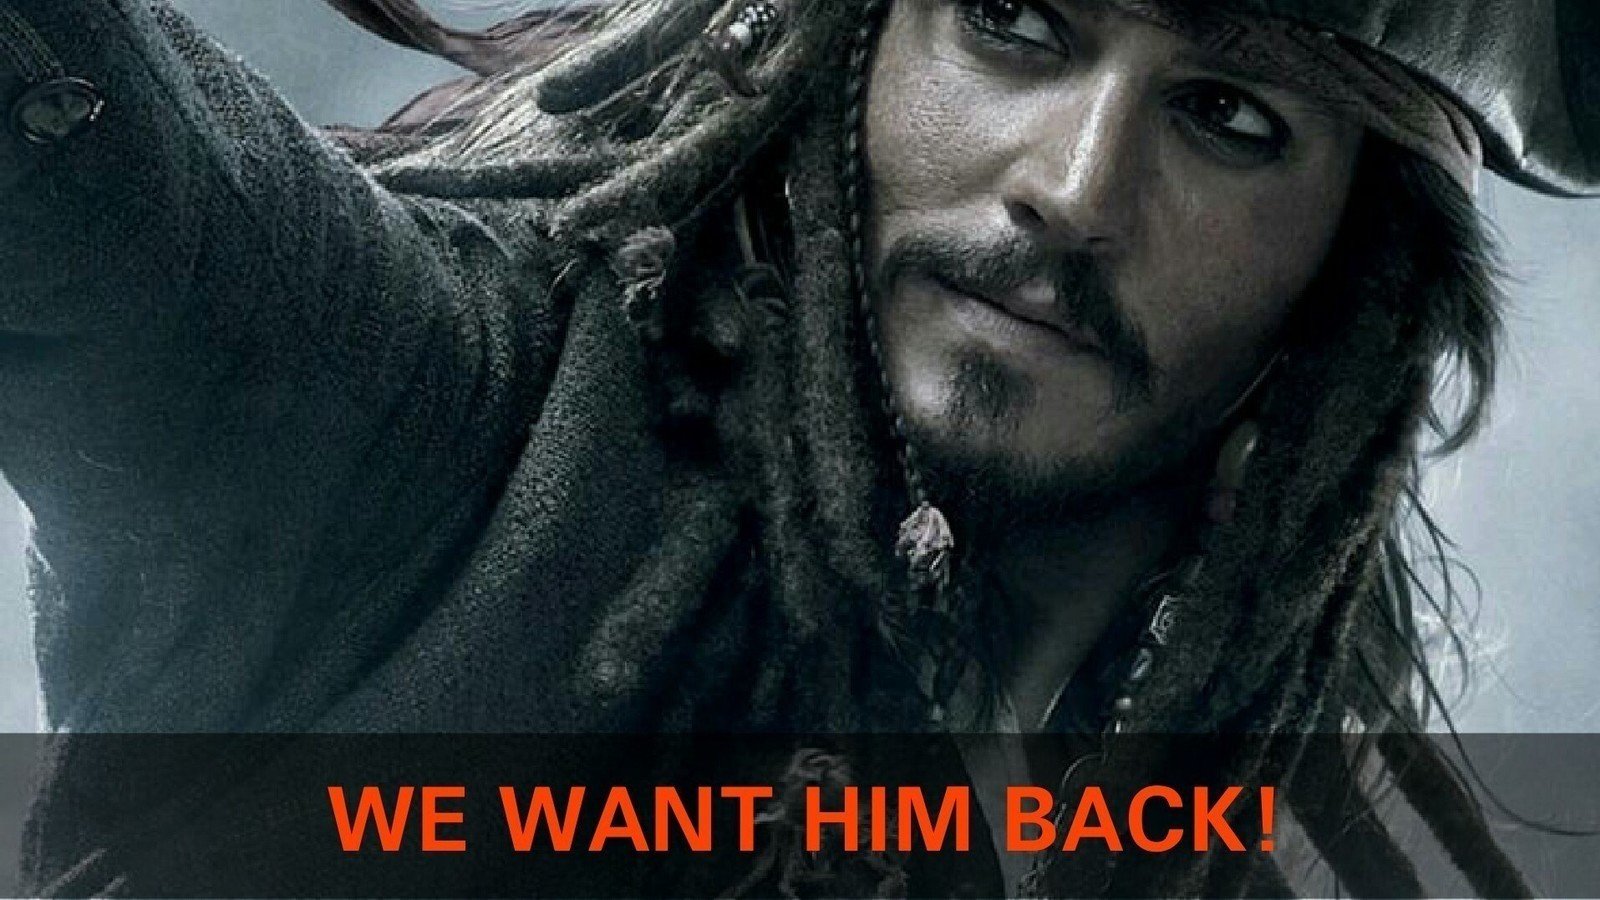 La pétition pour ramener Johnny Depp dans Pirates des Caraïbes réussit: détails